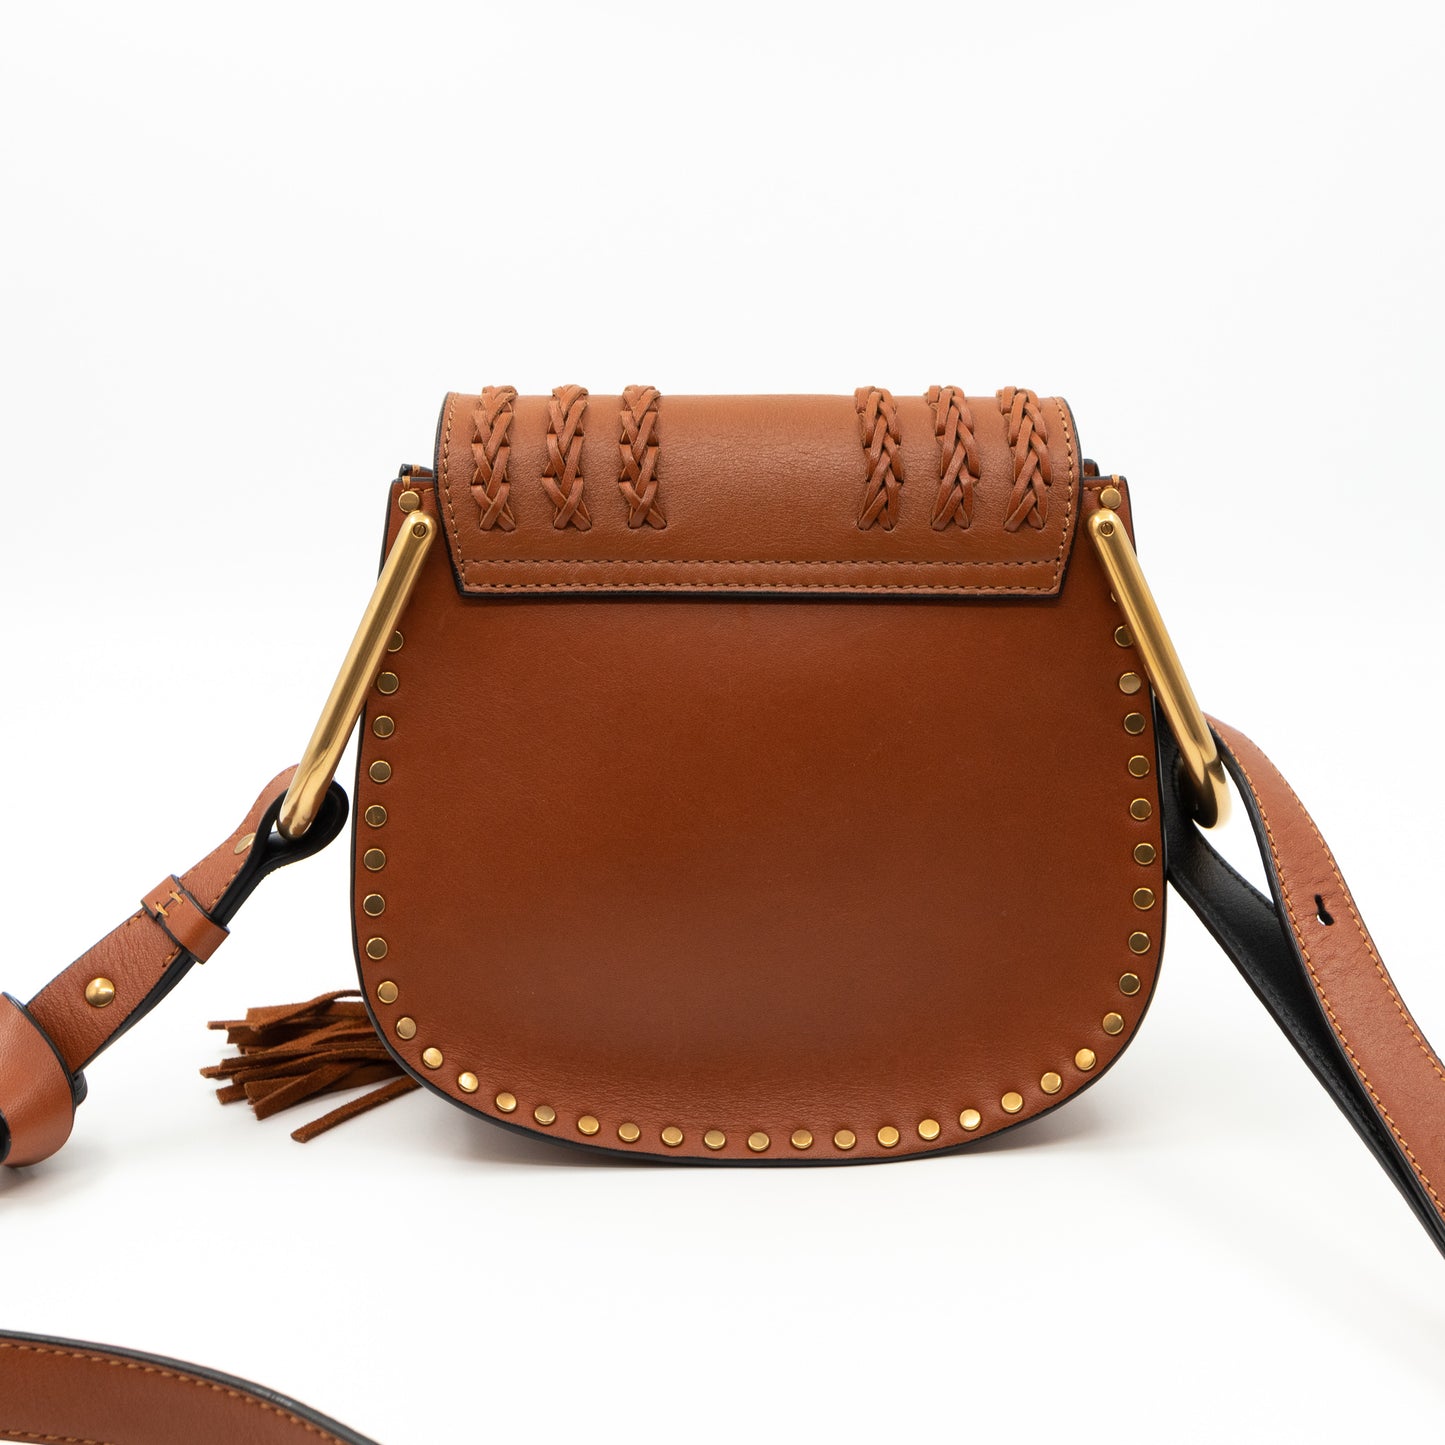 Hudson Mini Caramel Leather